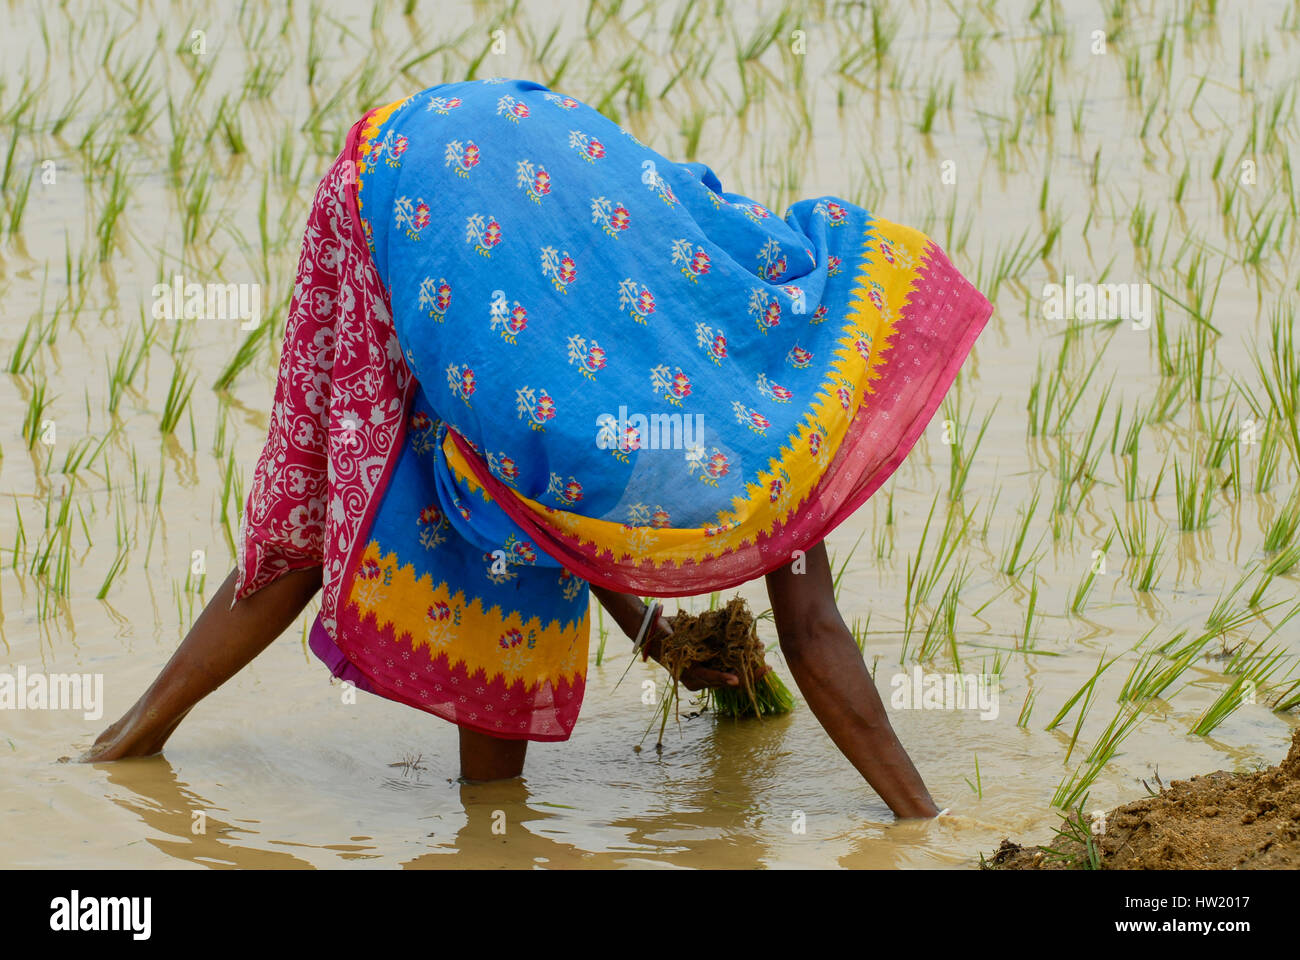 Indien Westbengal, Dorfes Gandhiji Songha, Reisanbau, Neupflanzung von Reis Sämlinge / INDIEN Westbengalen, Dorf Gandhiji Songha, Landwirtschaft, Umpflanzen von Reissetzlingen Stockfoto